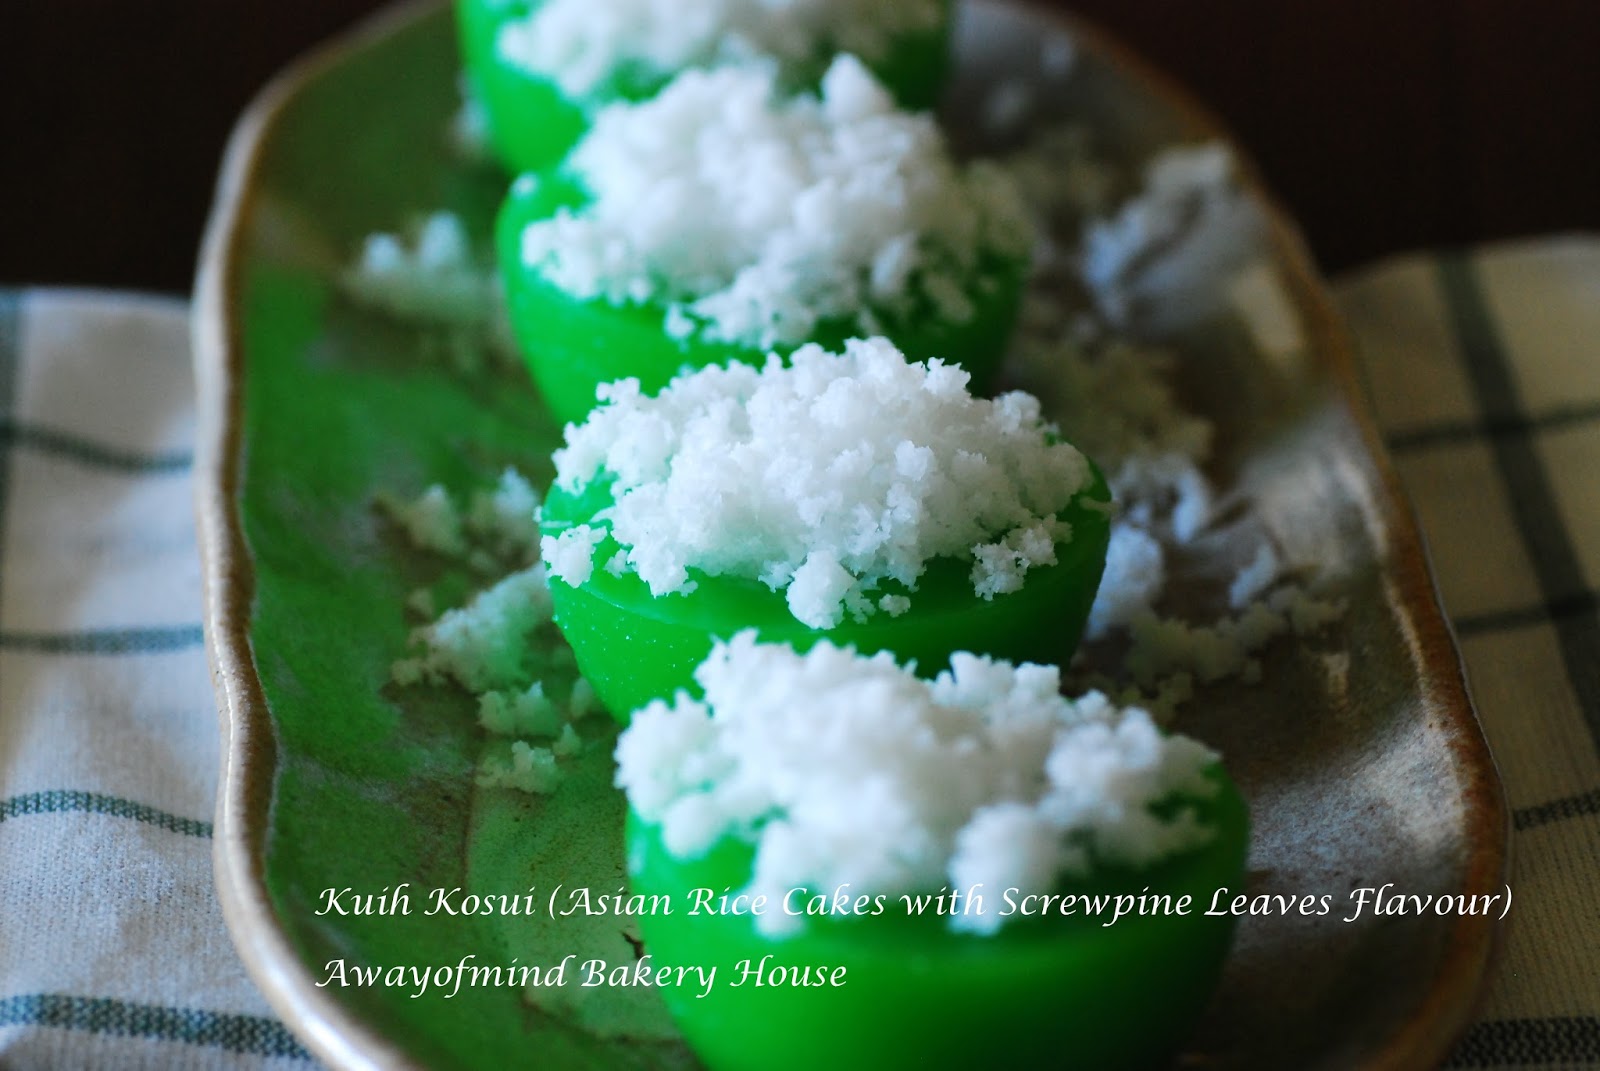 Awayofmind Bakery House: Kuih Kosui (Asian Rice Cakes with 